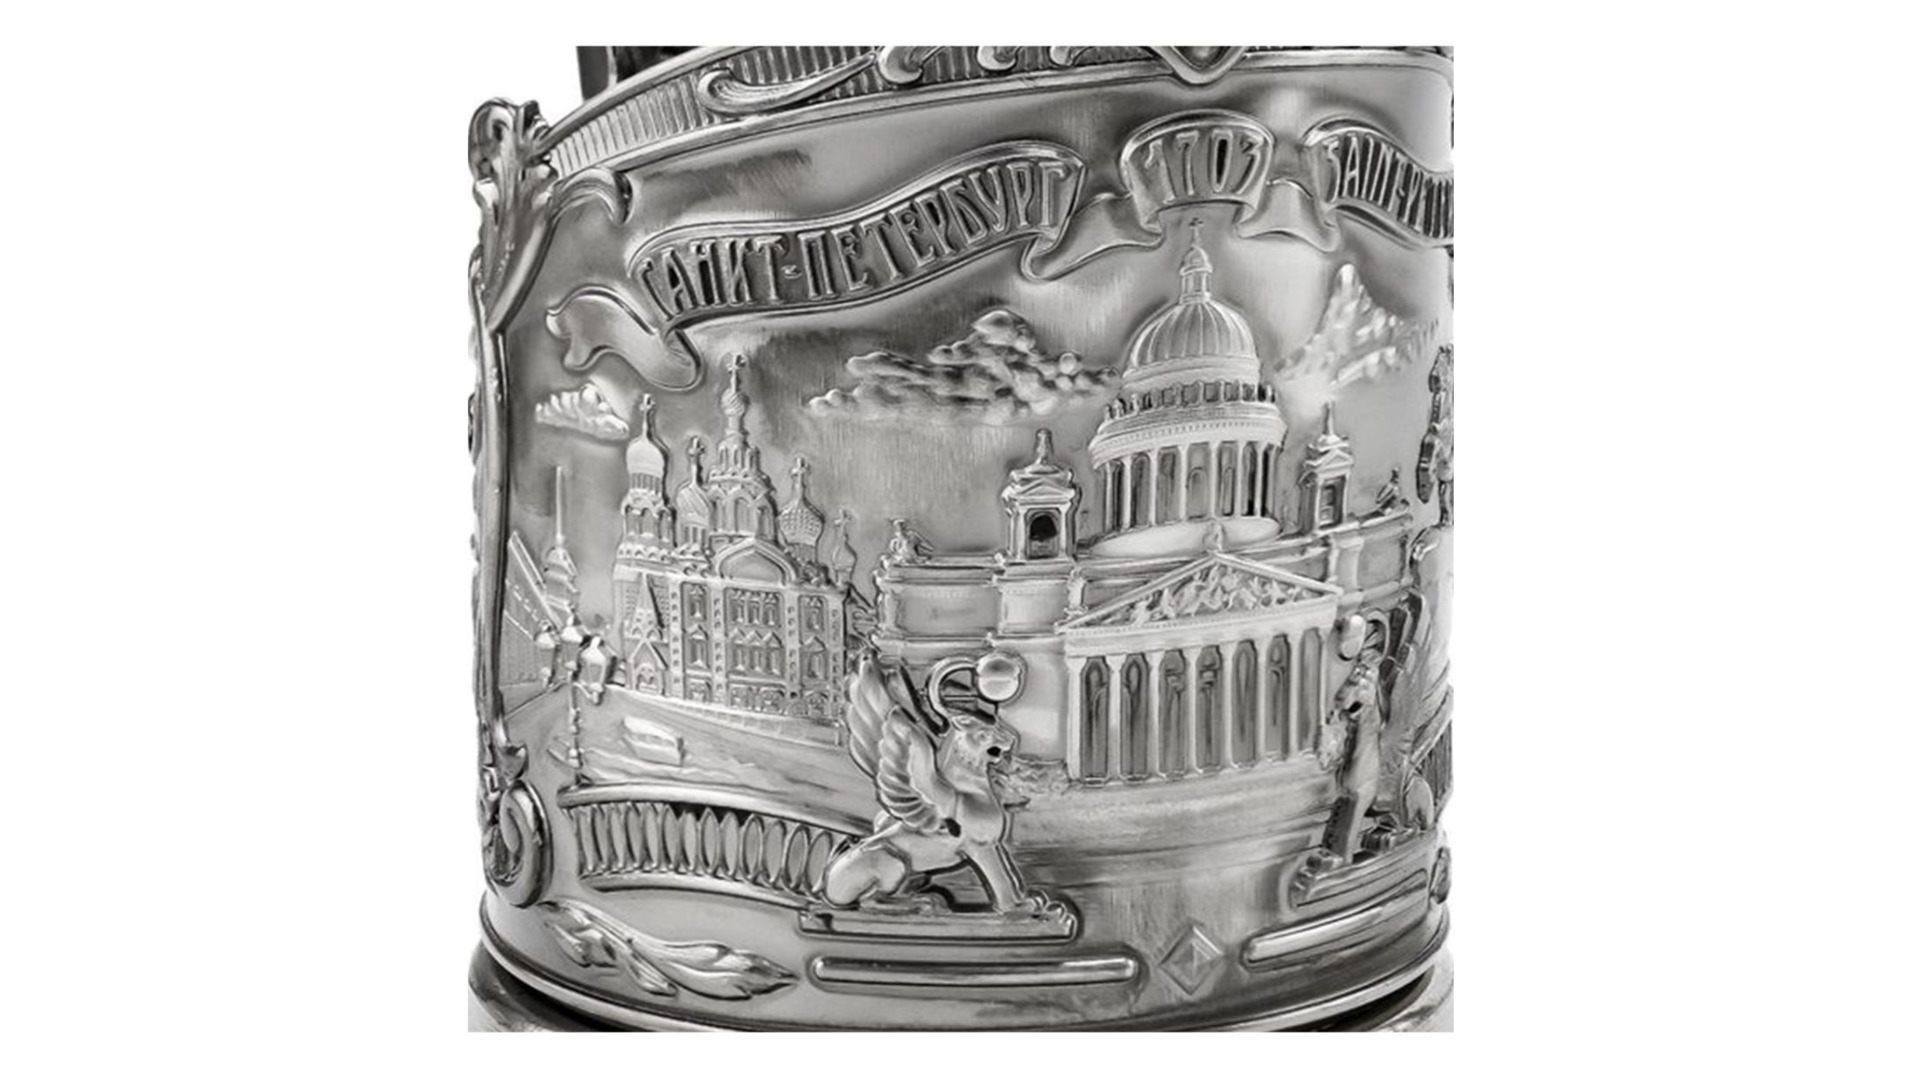 Набор для чая Кольчугинский мельхиор Санкт-Петербург Триумфальная с чернением, 2 предмета, латунь